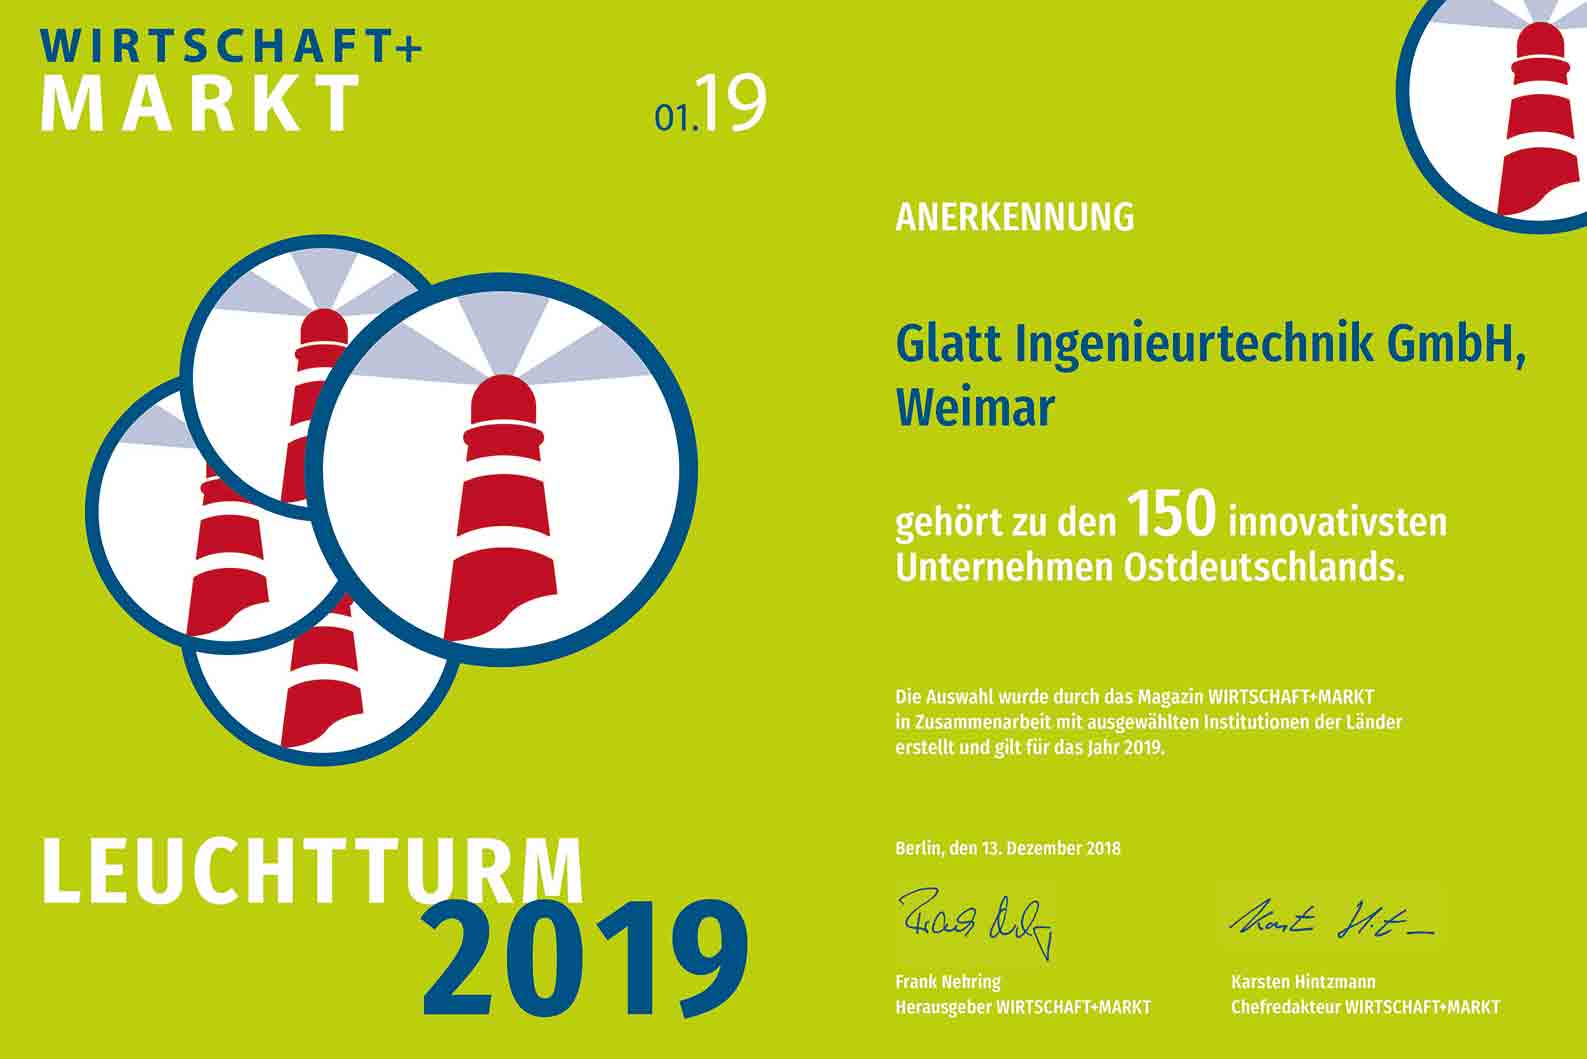 Glatt Ingenieurtechnik GmbH gehört zu den 150 innovativsten Unternehmen Ostdeutschlands